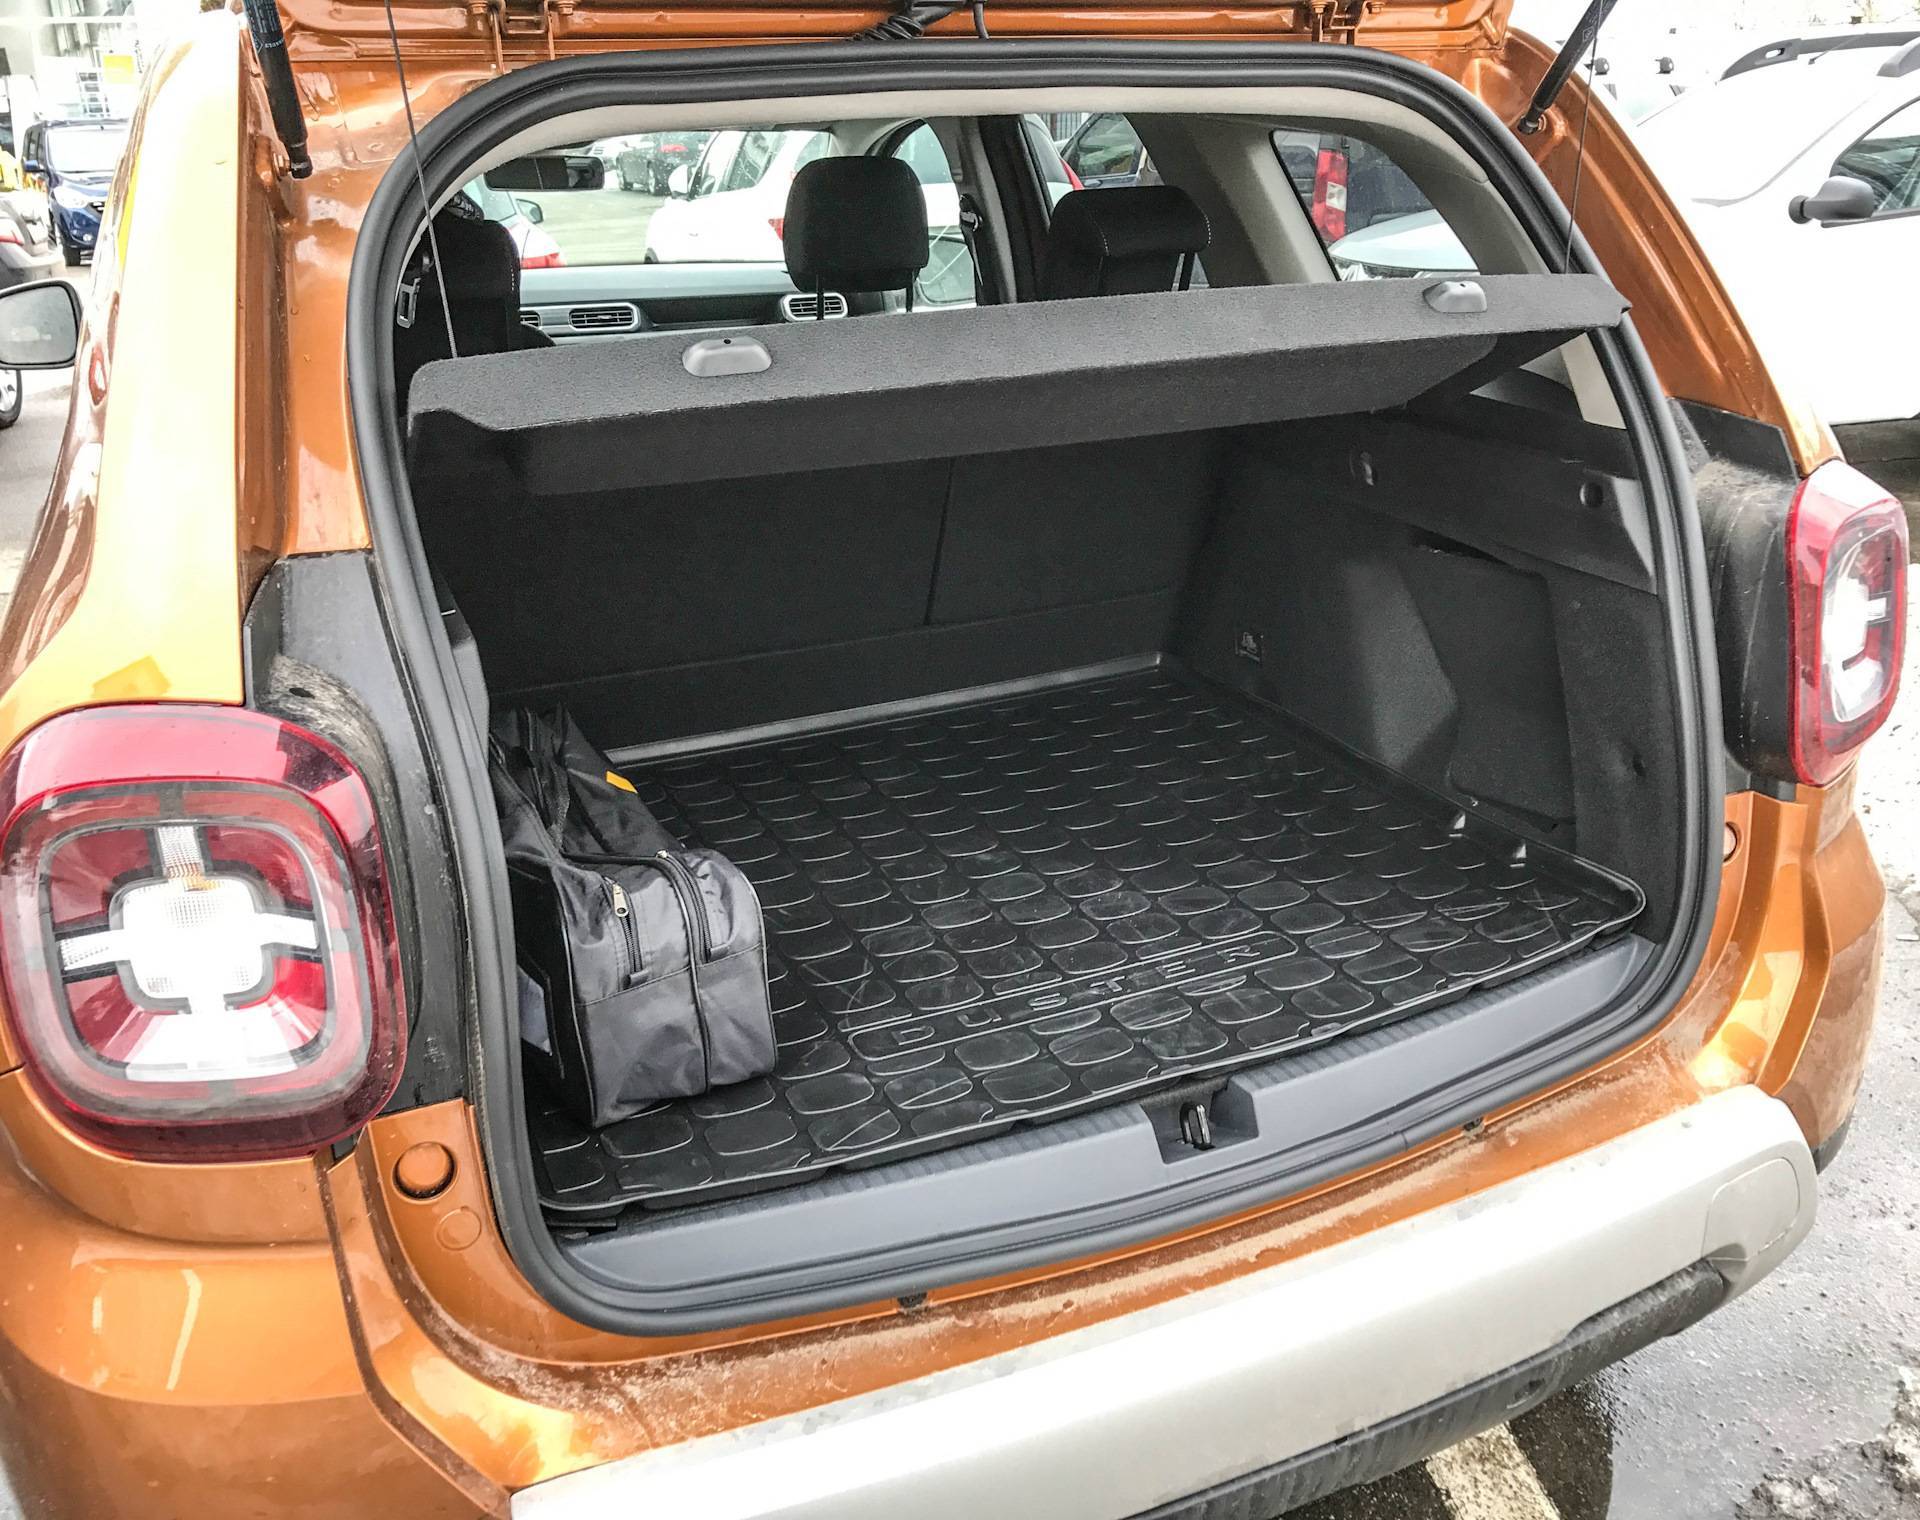 Renault duster багажник: размеры, объем, вместительность